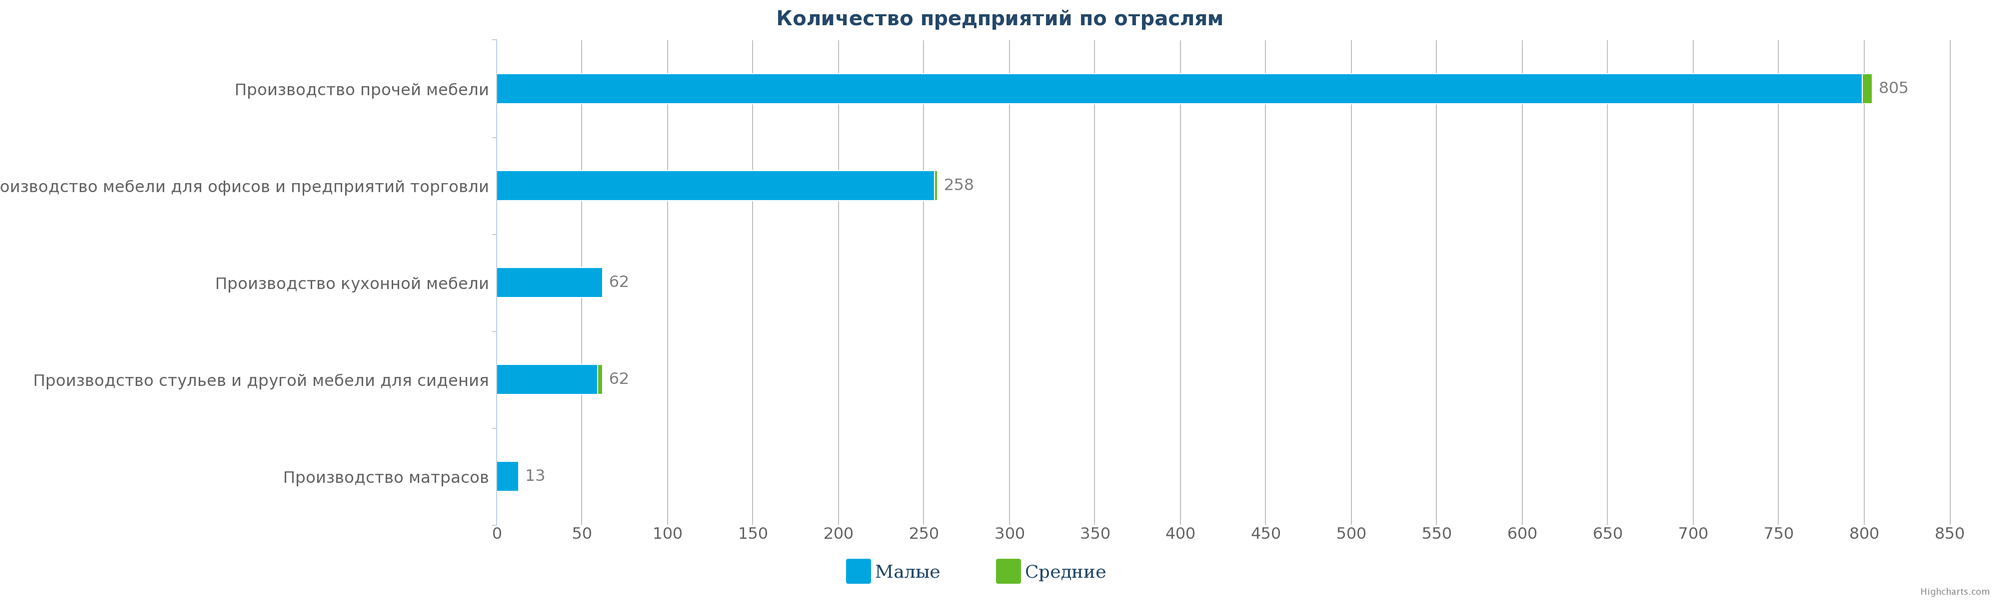 Количество производителей мебели Казахстана по размерам предприятия на 13.03.2017